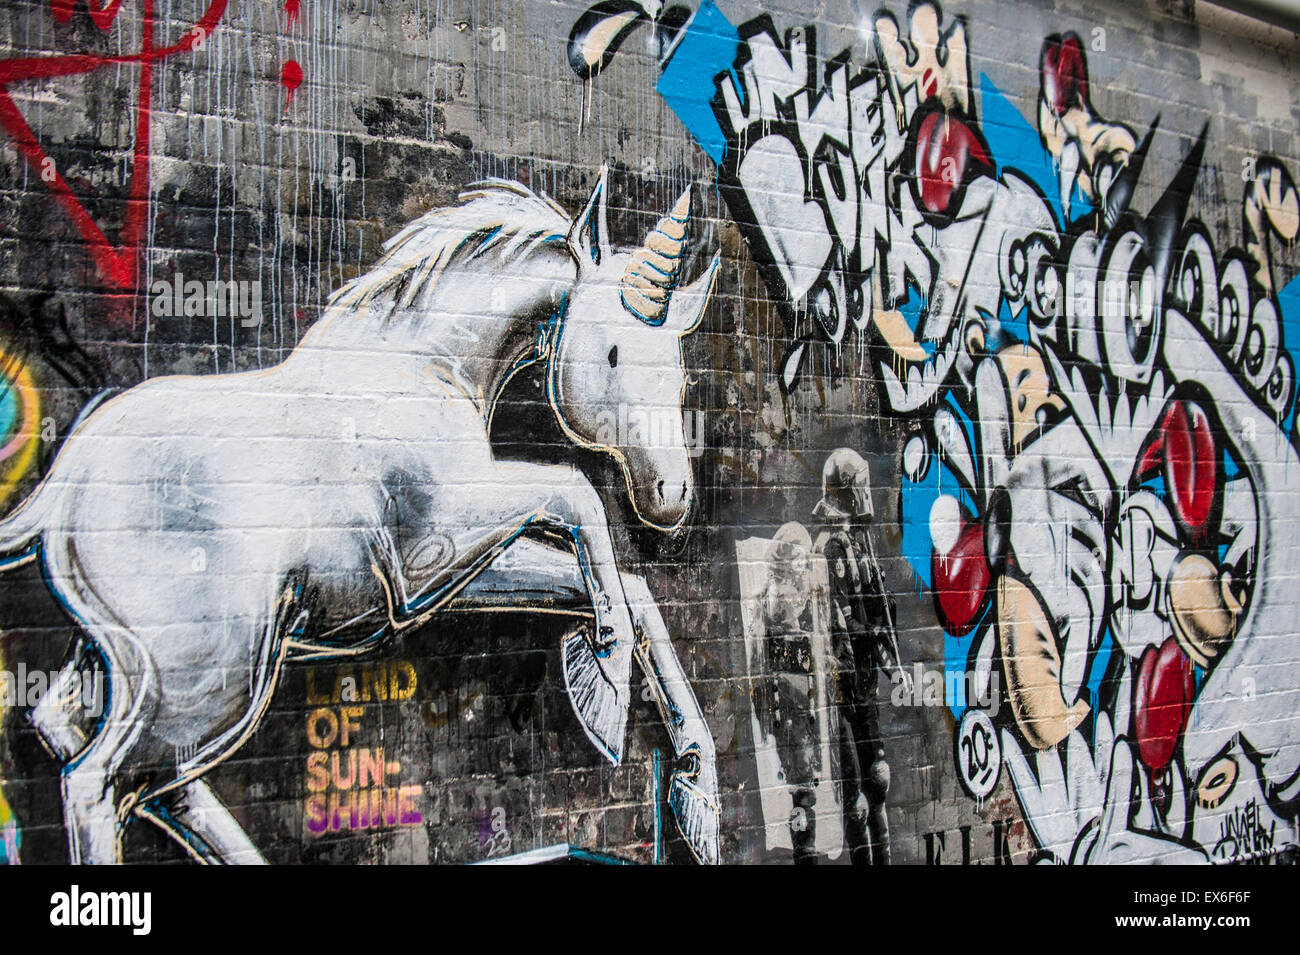 Unicorn graffiti in Melbourne, Australia Stock Photo